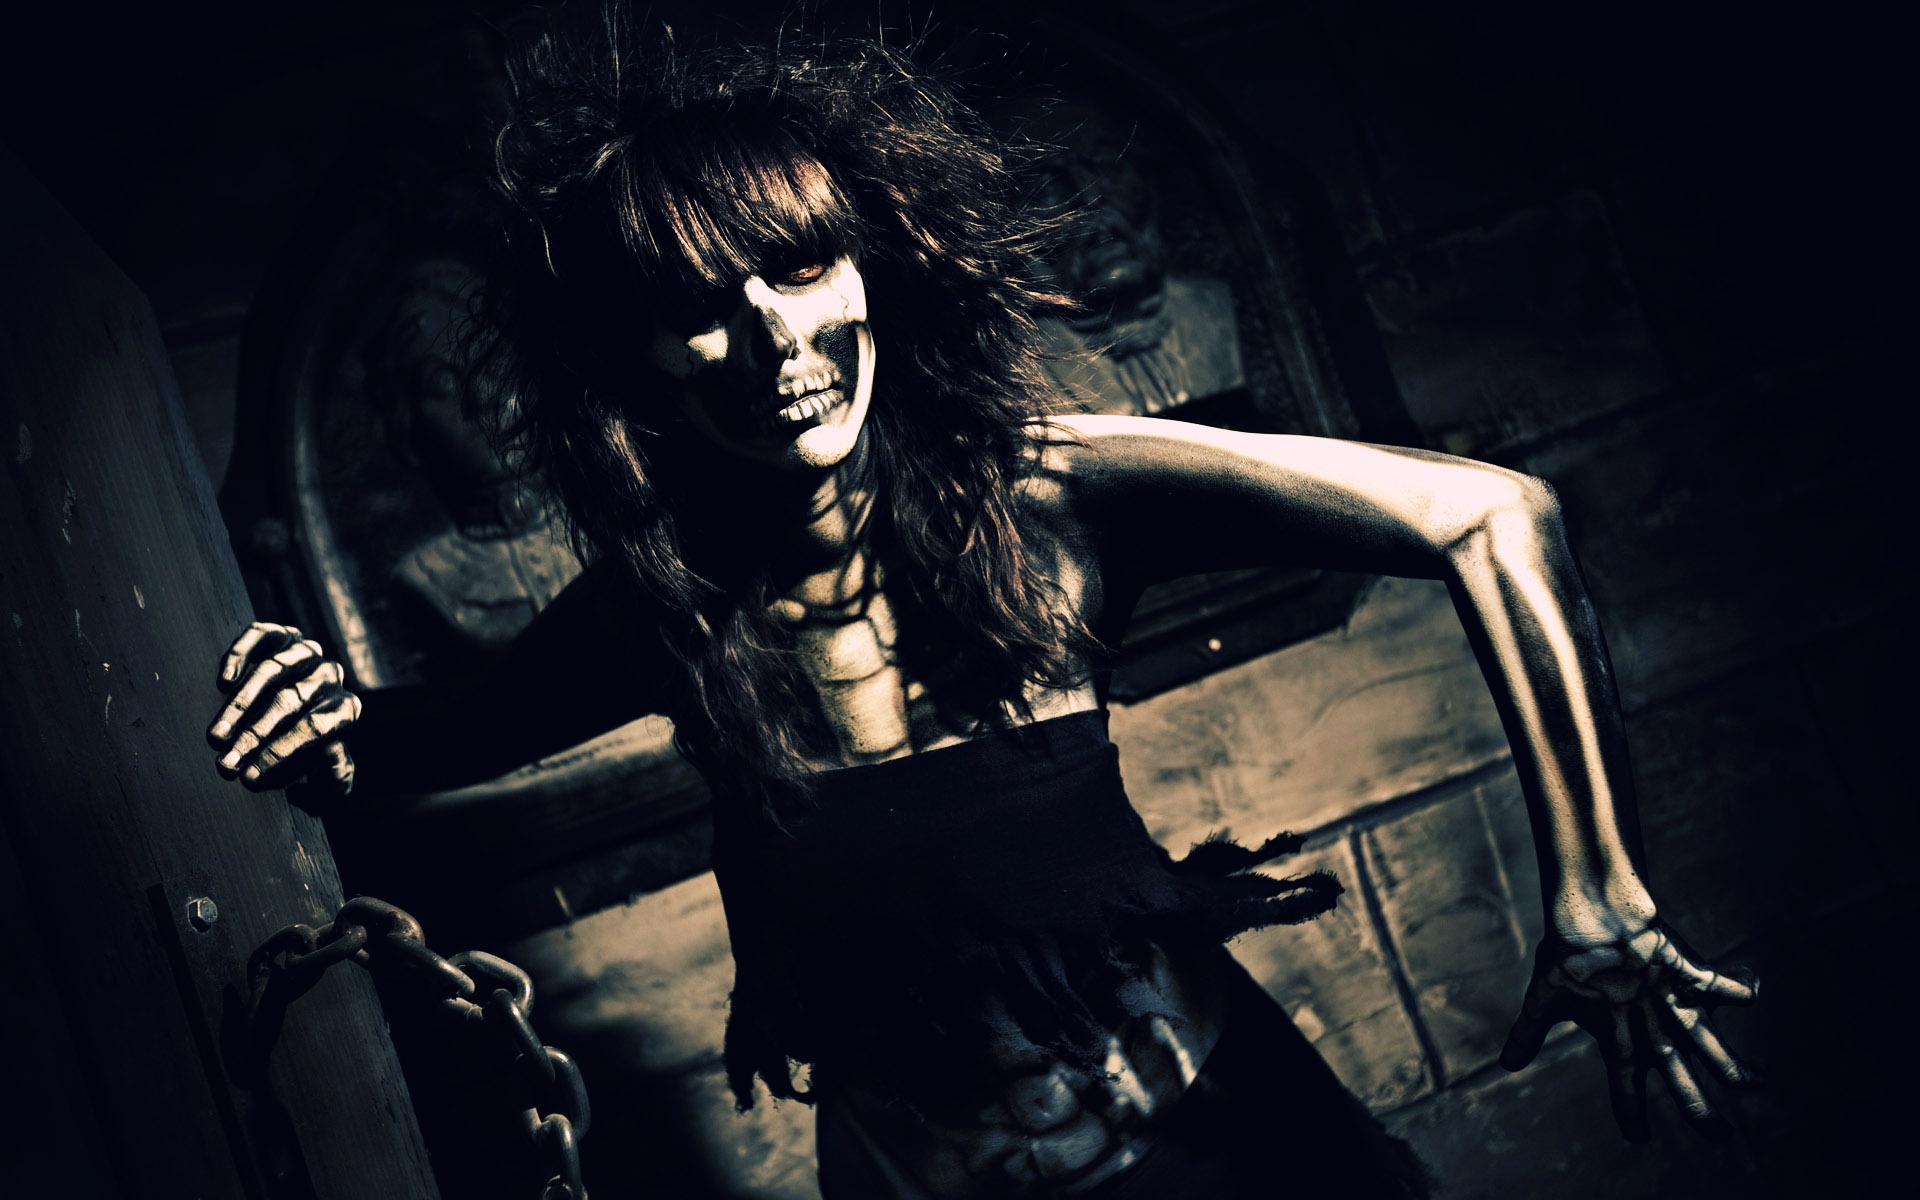 Skeleton Horror Scary Creepy Spooky Women Brute Bones Wallpaper